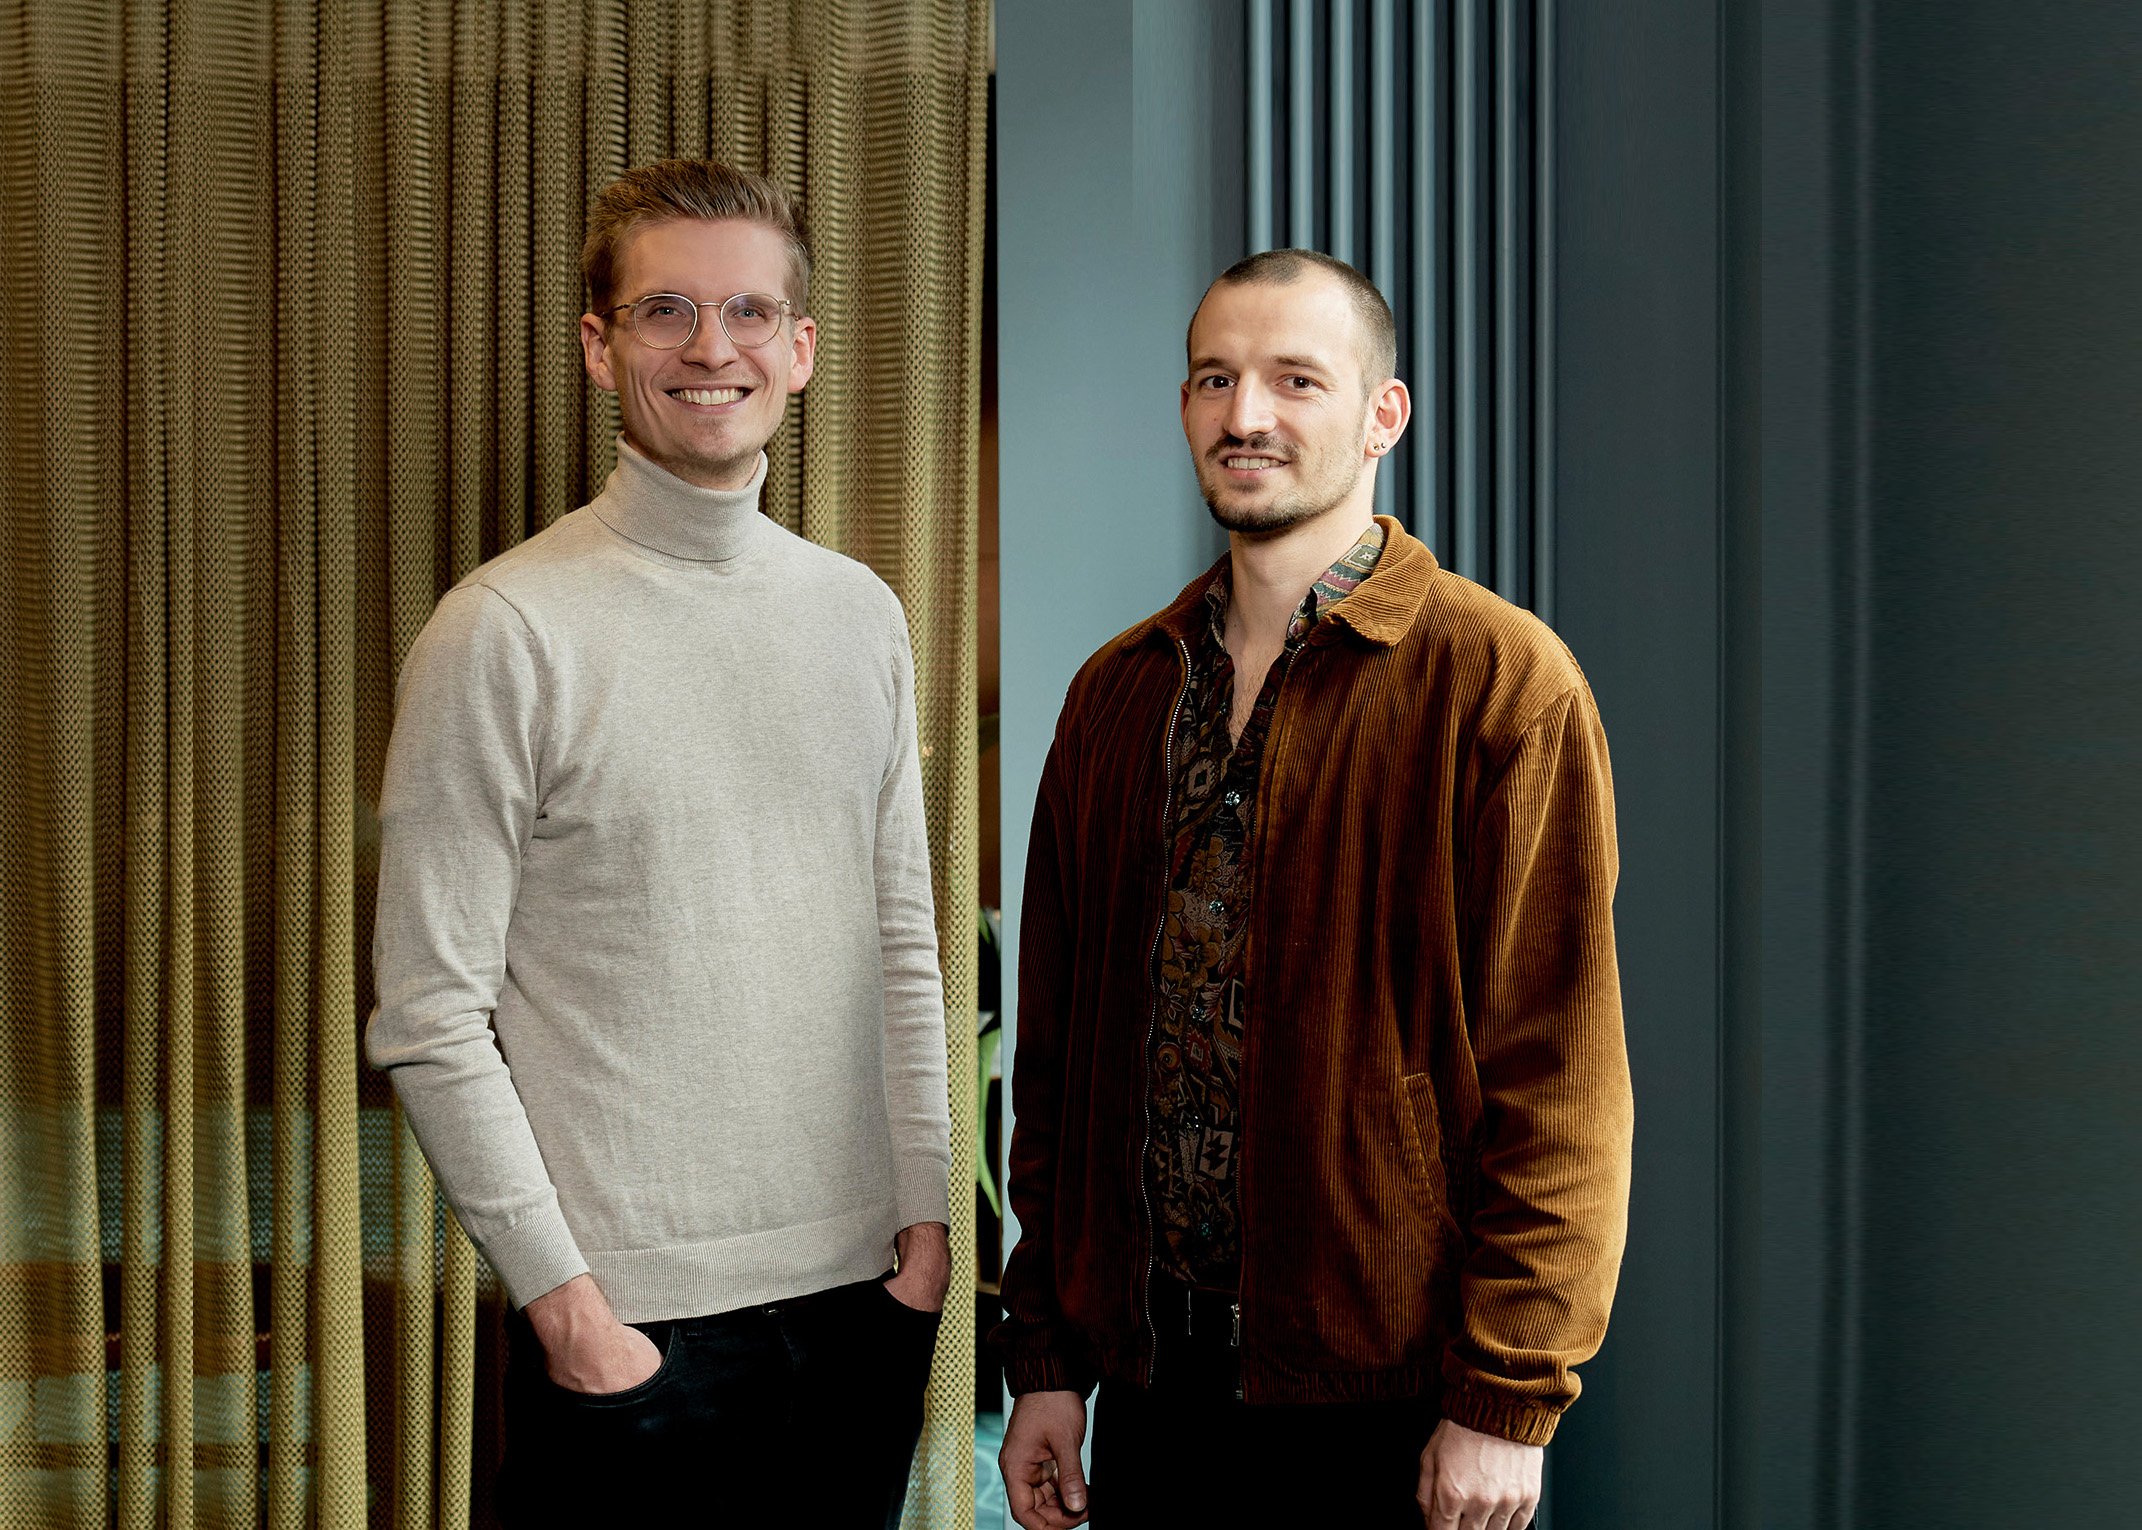 Portraitfoto von zwei jungen Männern aus der Startup Szene stehen in einem Berliner Hotel und schauen freundlich und direkt in die Kamera